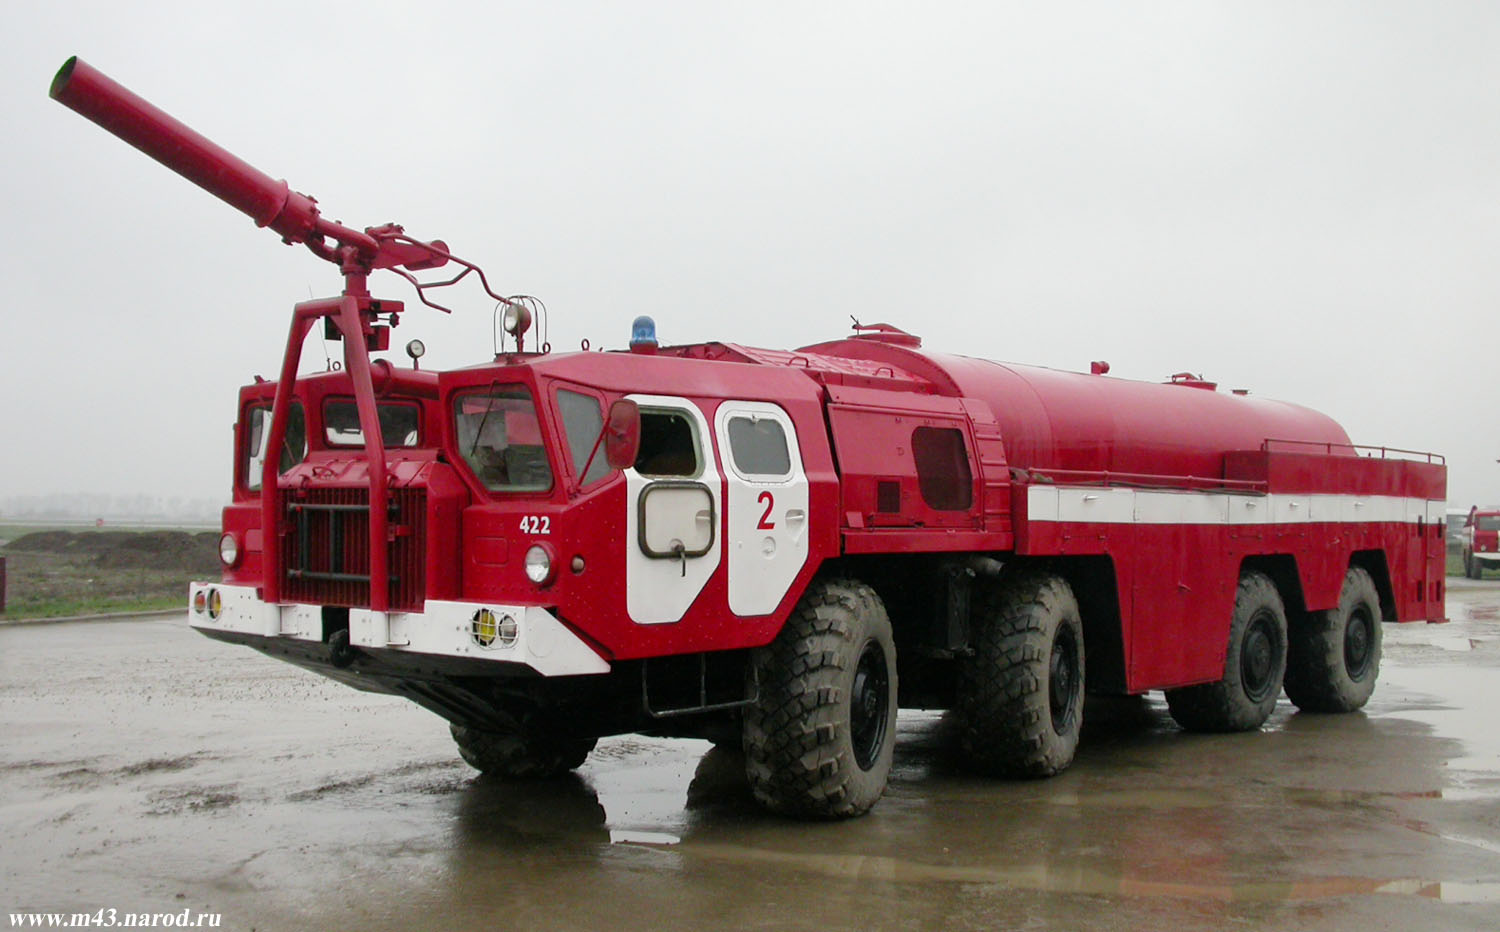 Пожарный автомобиль баз. АА-60 (МАЗ 7313). МАЗ-7310 АА-60. Автомобиль Аэродромный пожарный АА-60(7310). МАЗ 7310 Аэродромный пожарный.